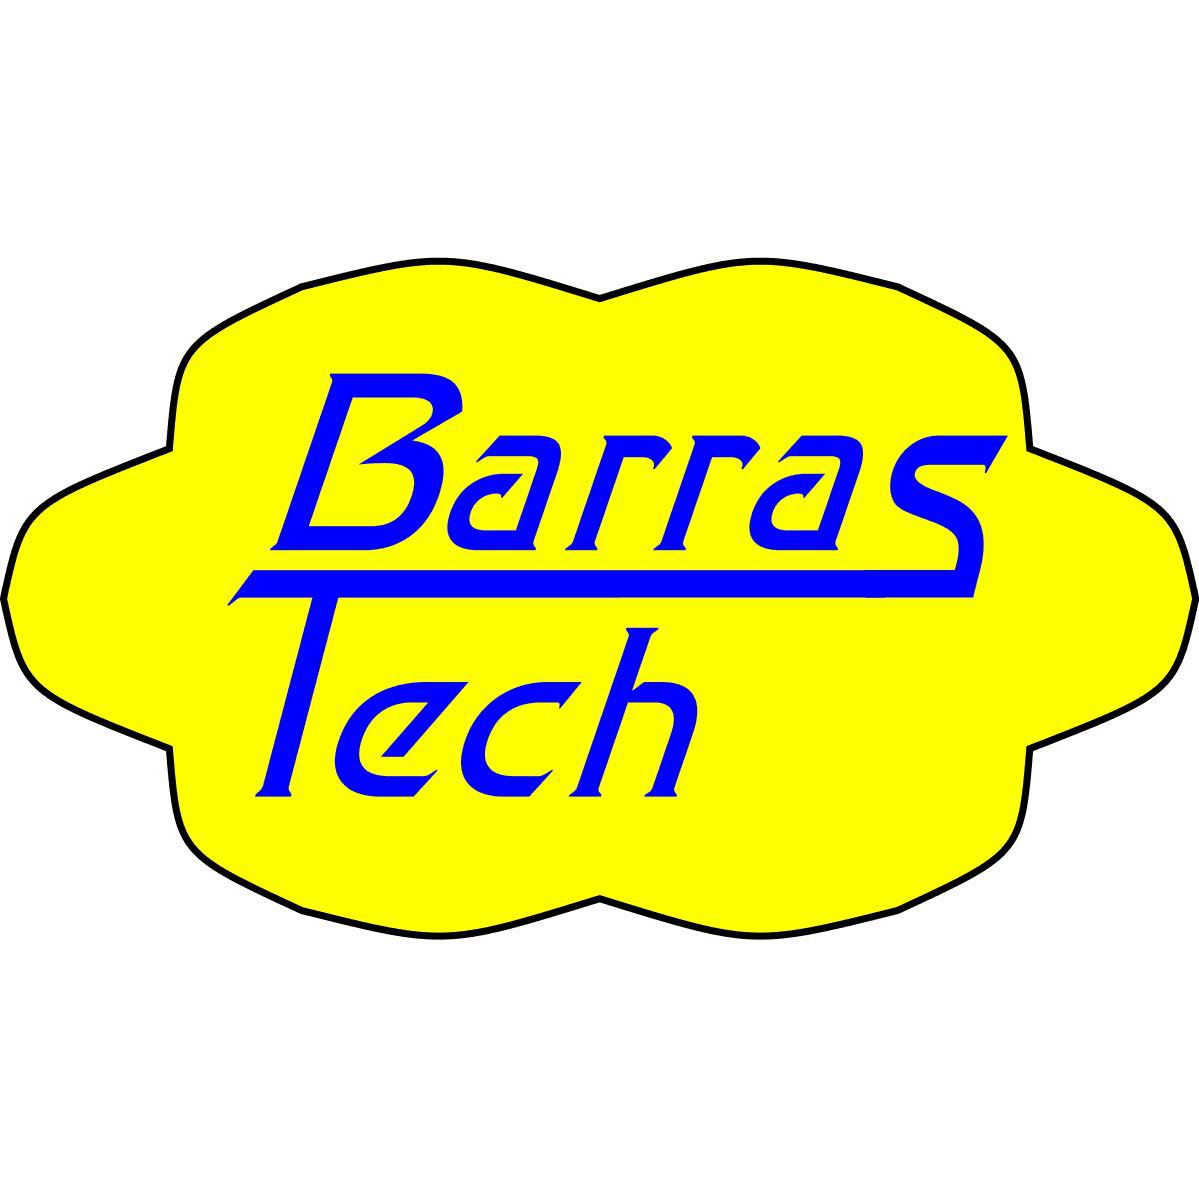 Barras Tech - Stonehaven, Aberdeenshire - 07484 835826 | ShowMeLocal.com